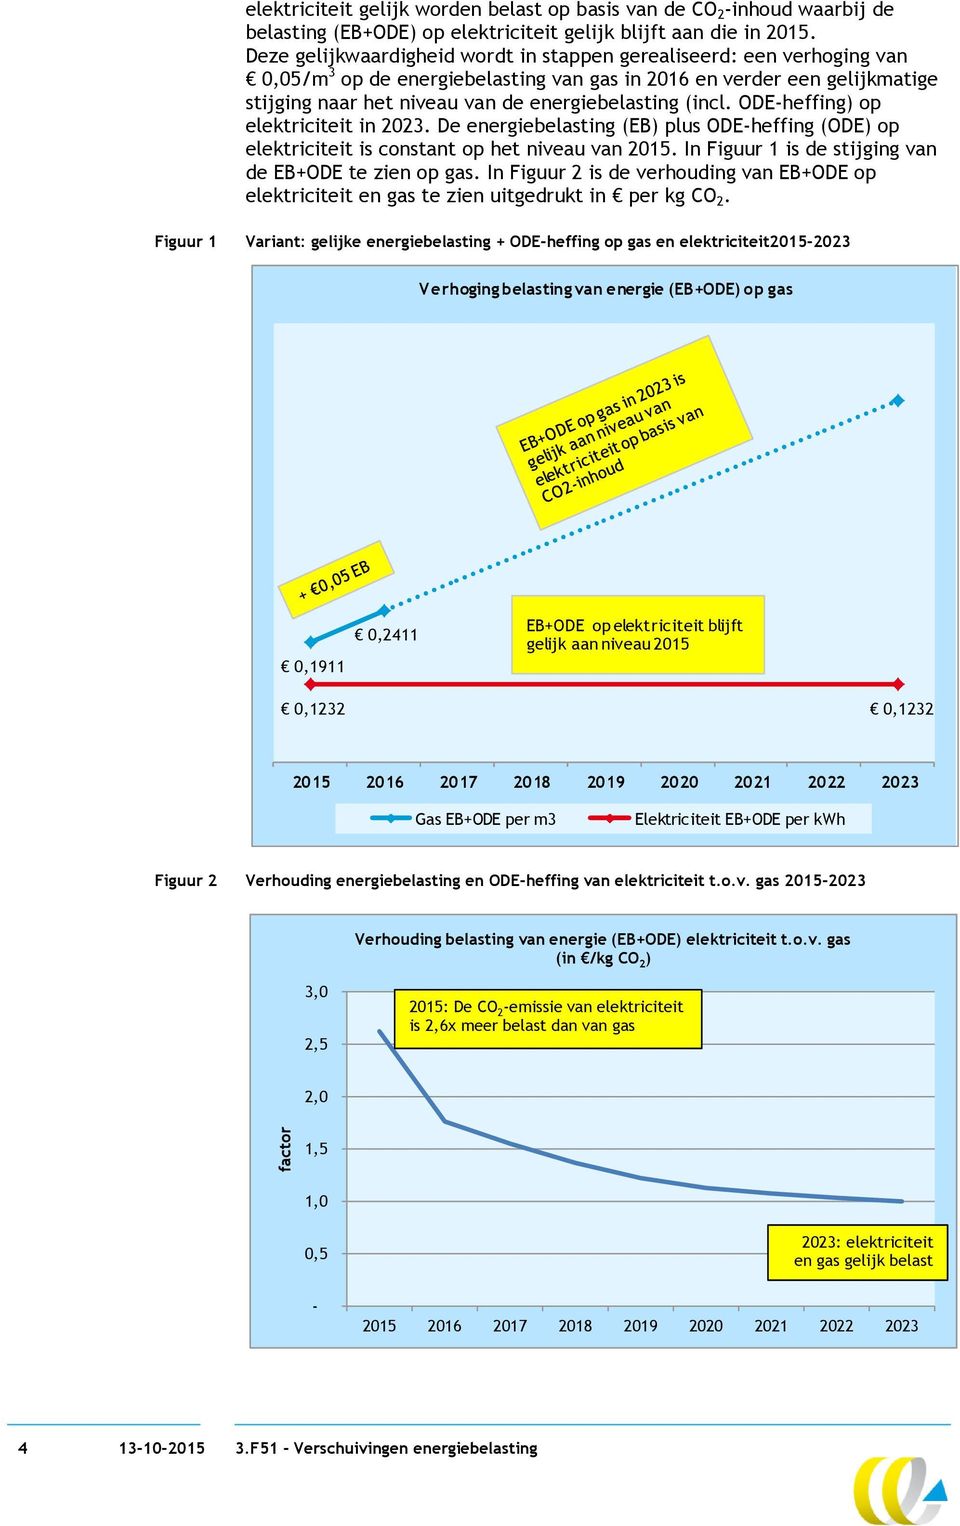 (incl. ODE-heffing) op elektriciteit in 2023. De energiebelasting (EB) plus ODE-heffing (ODE) op elektriciteit is constant op het niveau van 2015.